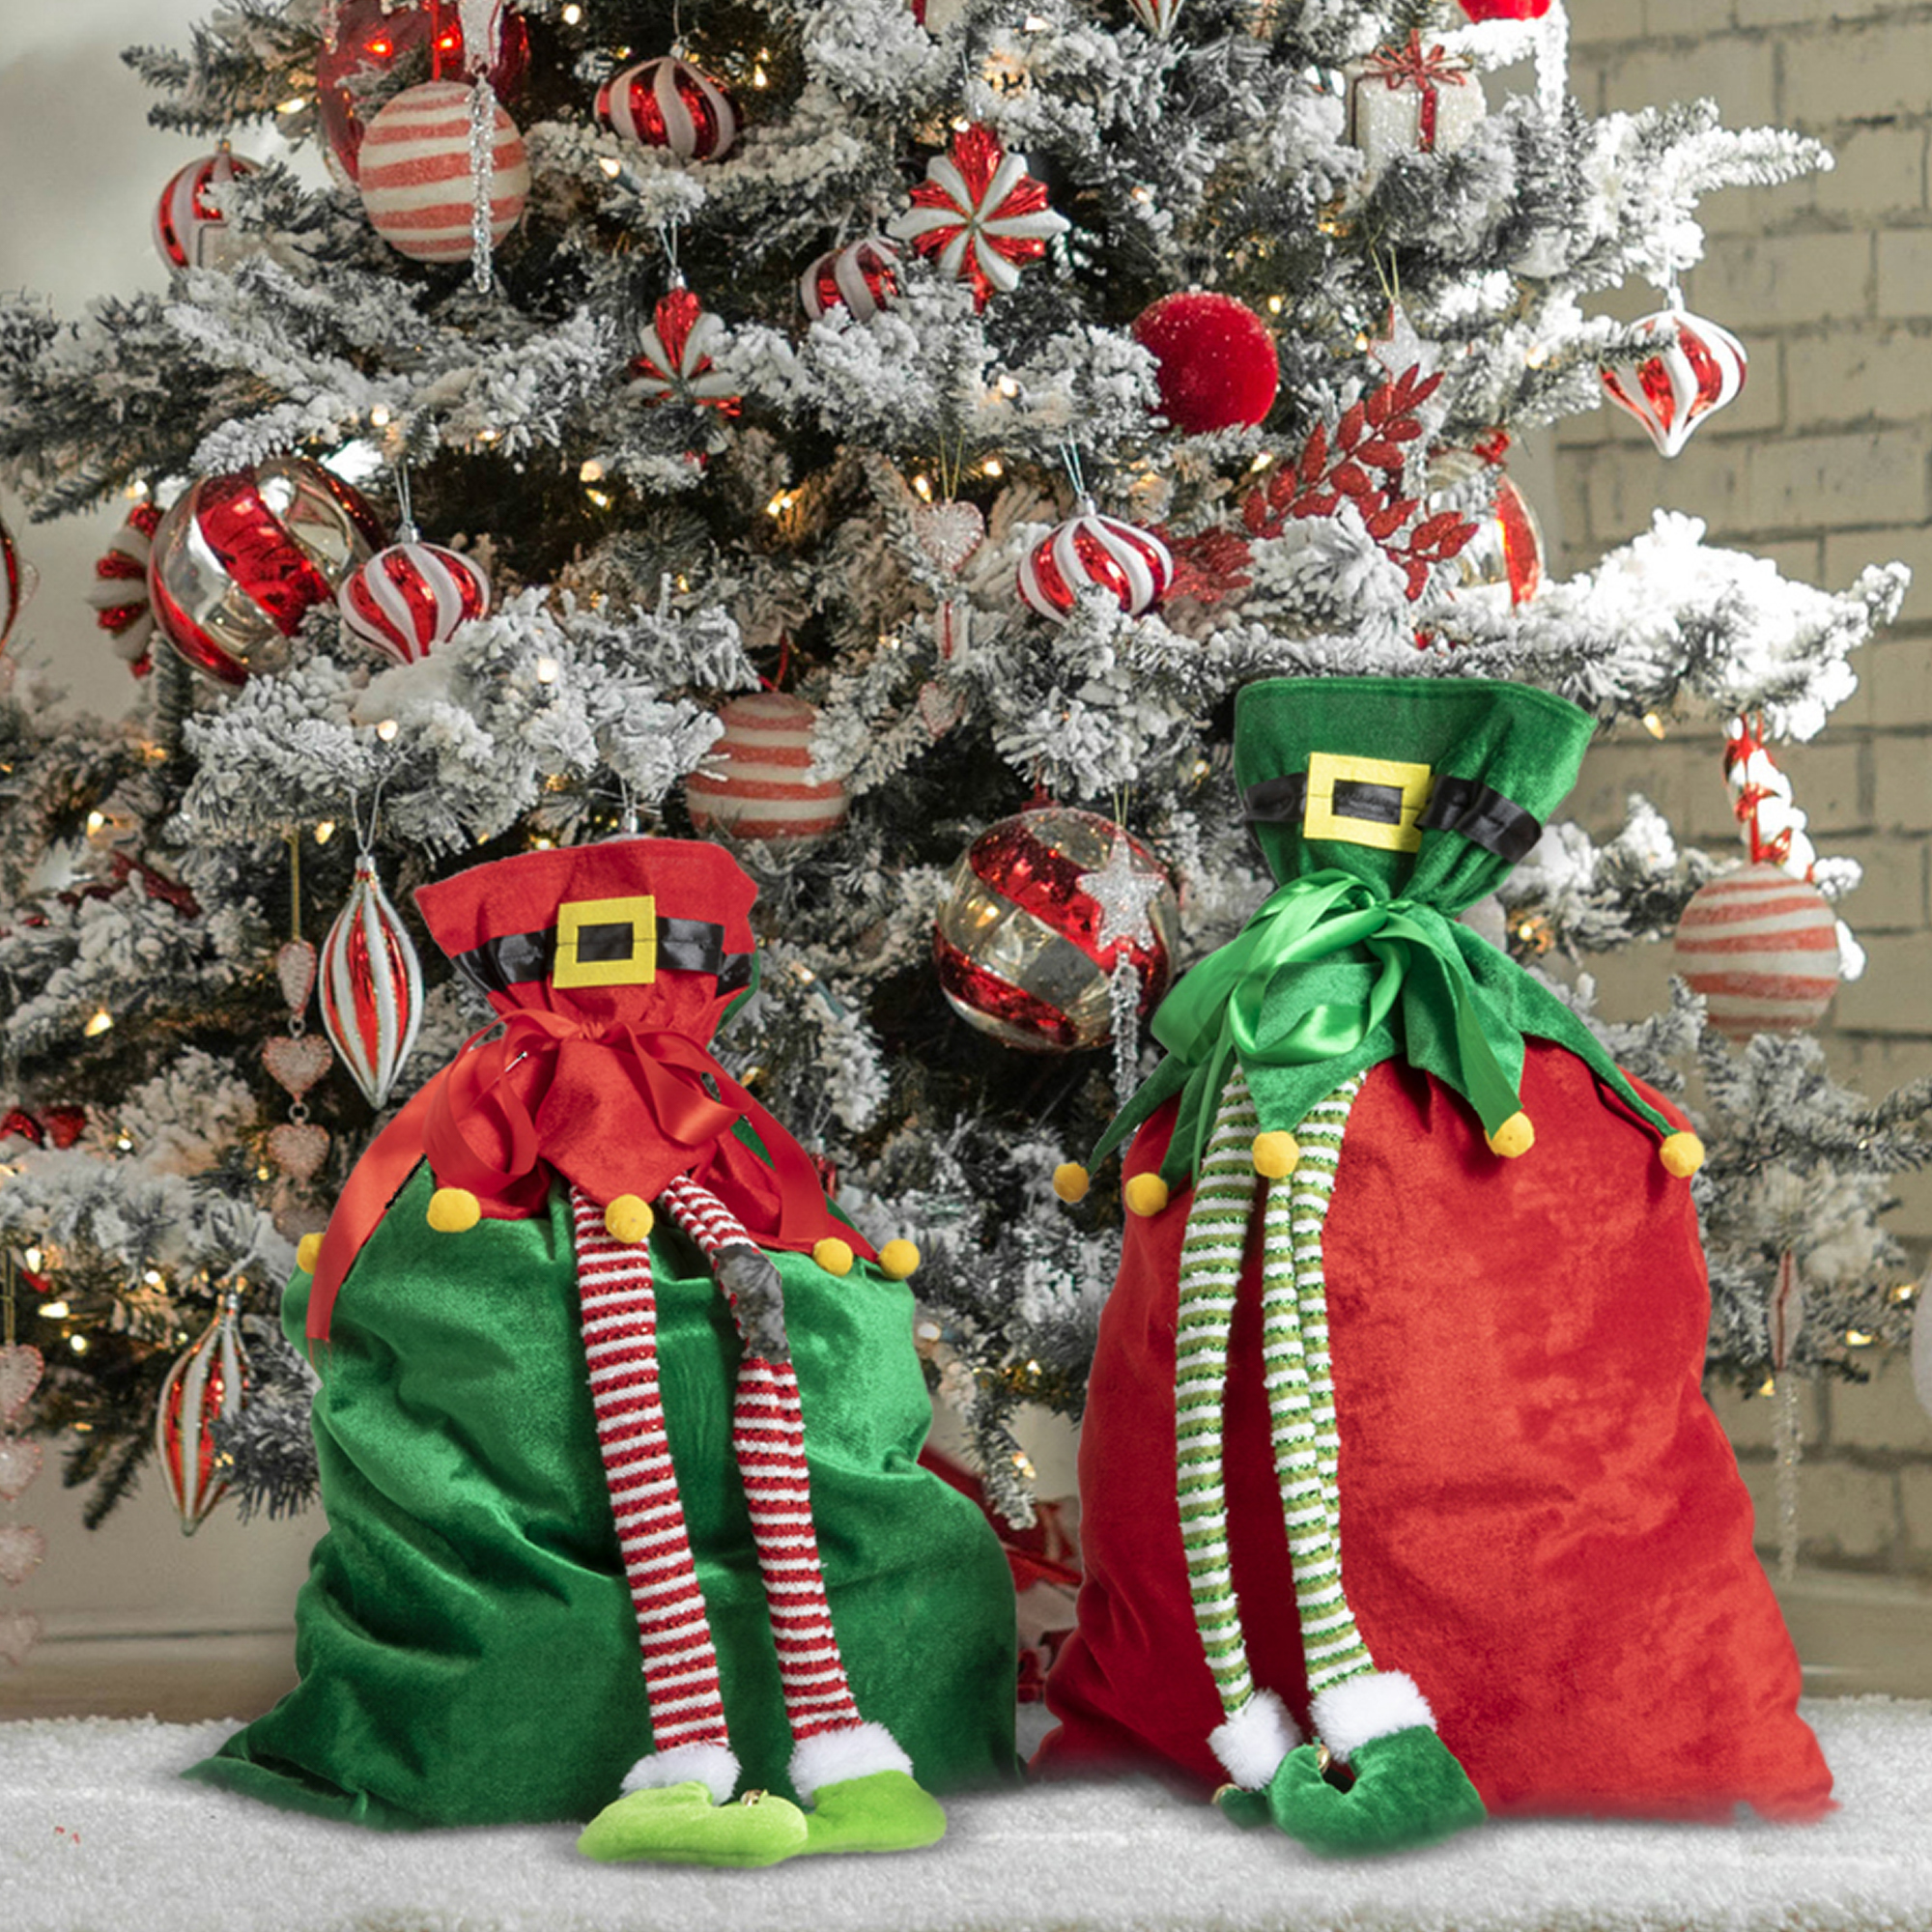 com-four® 1x Elfo di Natale XXL in Un Design Carino Ottimo per Le tue Decorazioni Natalizie o da Regalare.